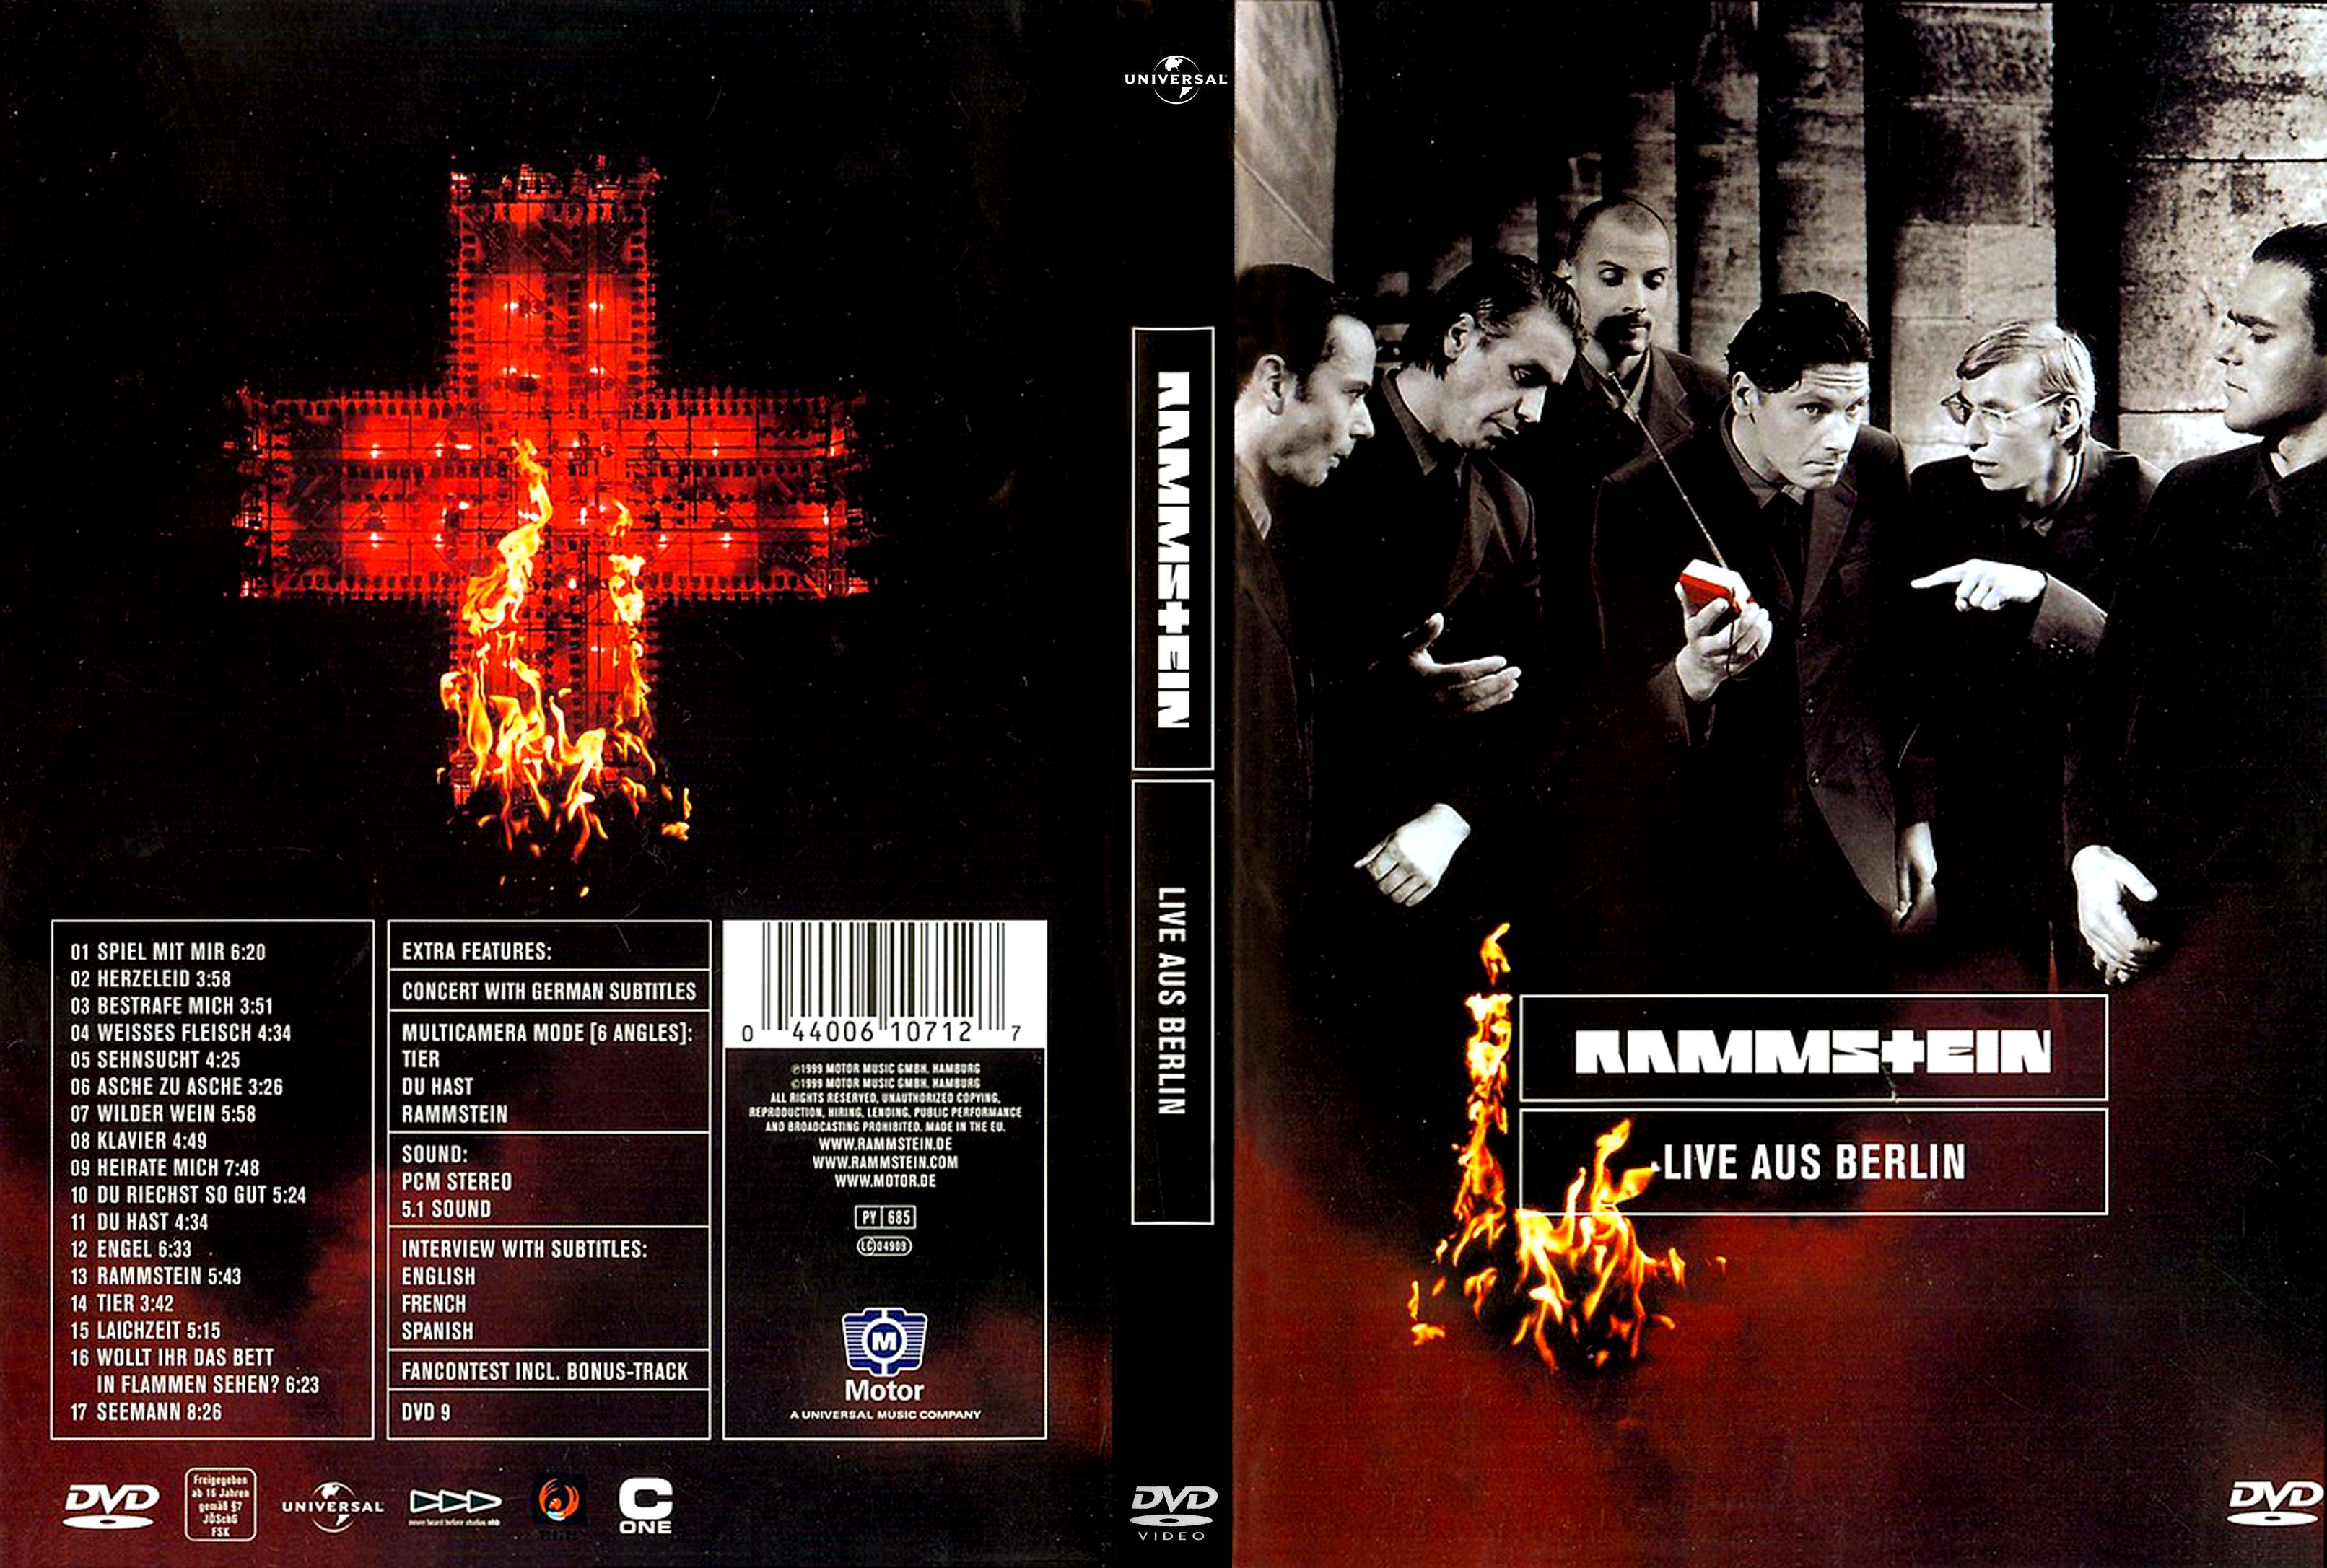 Jaquette DVD Rammstein Live aus Berlin